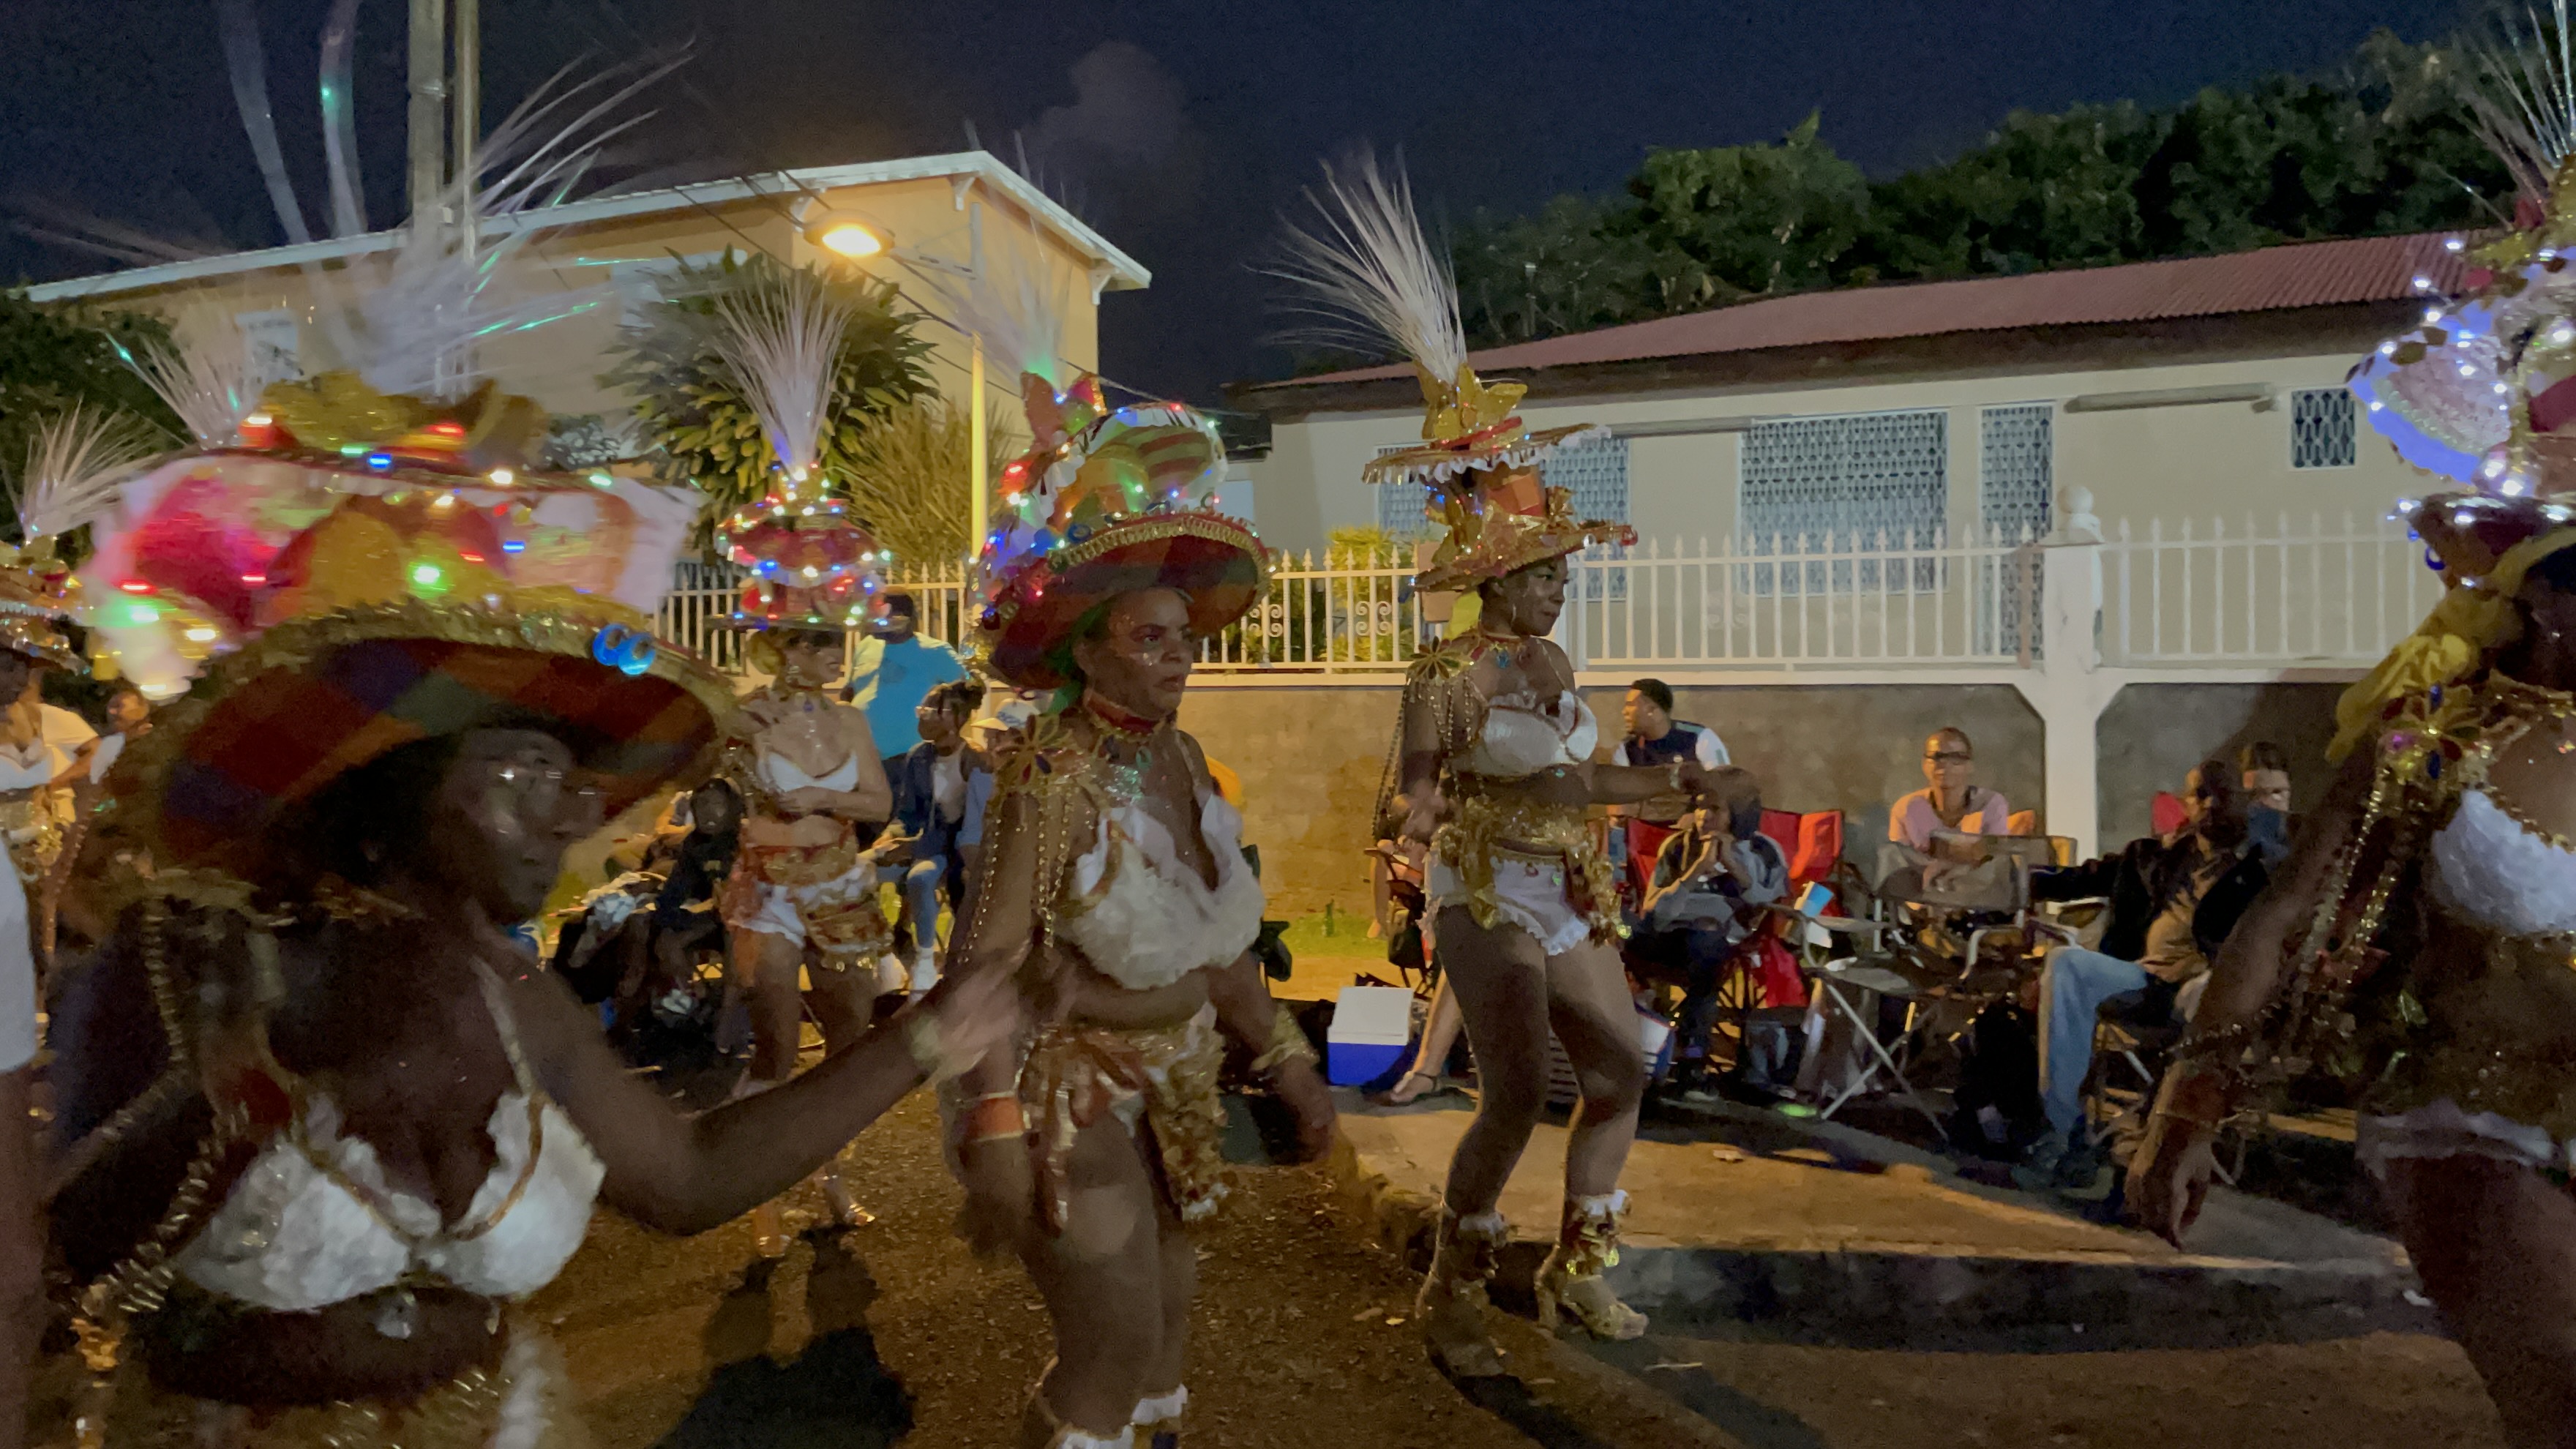     Le Carnaval de Guadeloupe est-il accessible à tous ?

